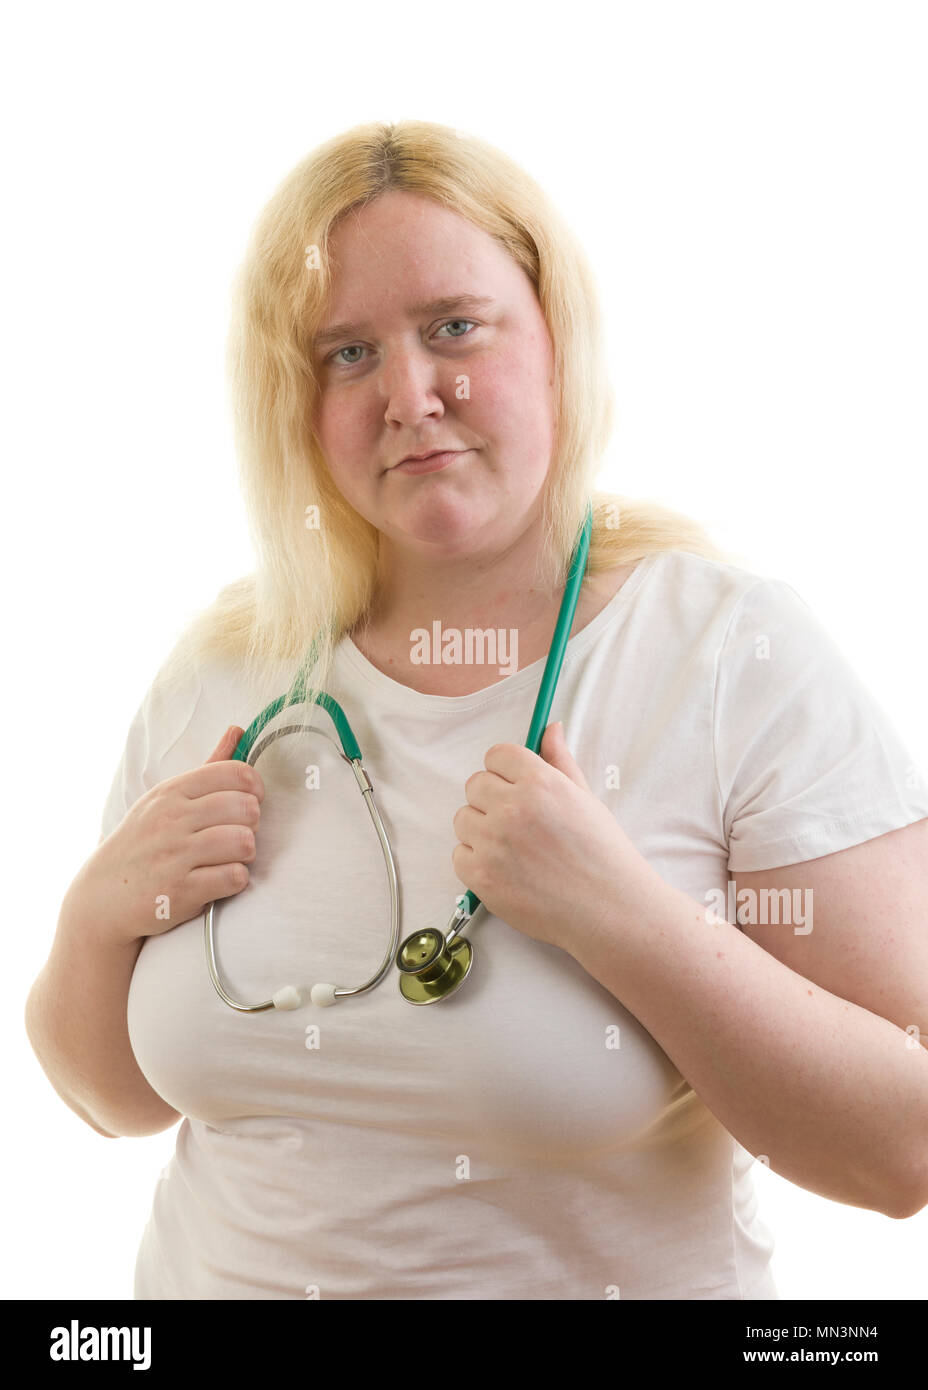 Junge kaukasier blond weiblich Frau mit stetoscope Schlingen um den Hals auf weißem Hintergrund Model Release: Ja. Property Release: Nein. Stockfoto